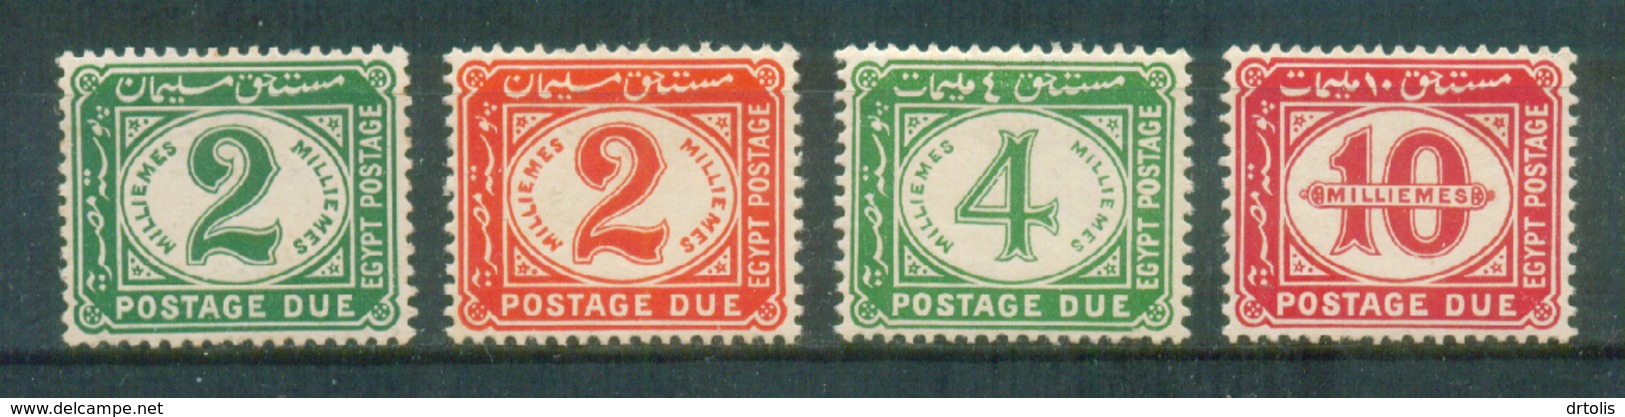 EGYPT / 1921 / POSTAGE DUE / MNH - 1915-1921 Protettorato Britannico